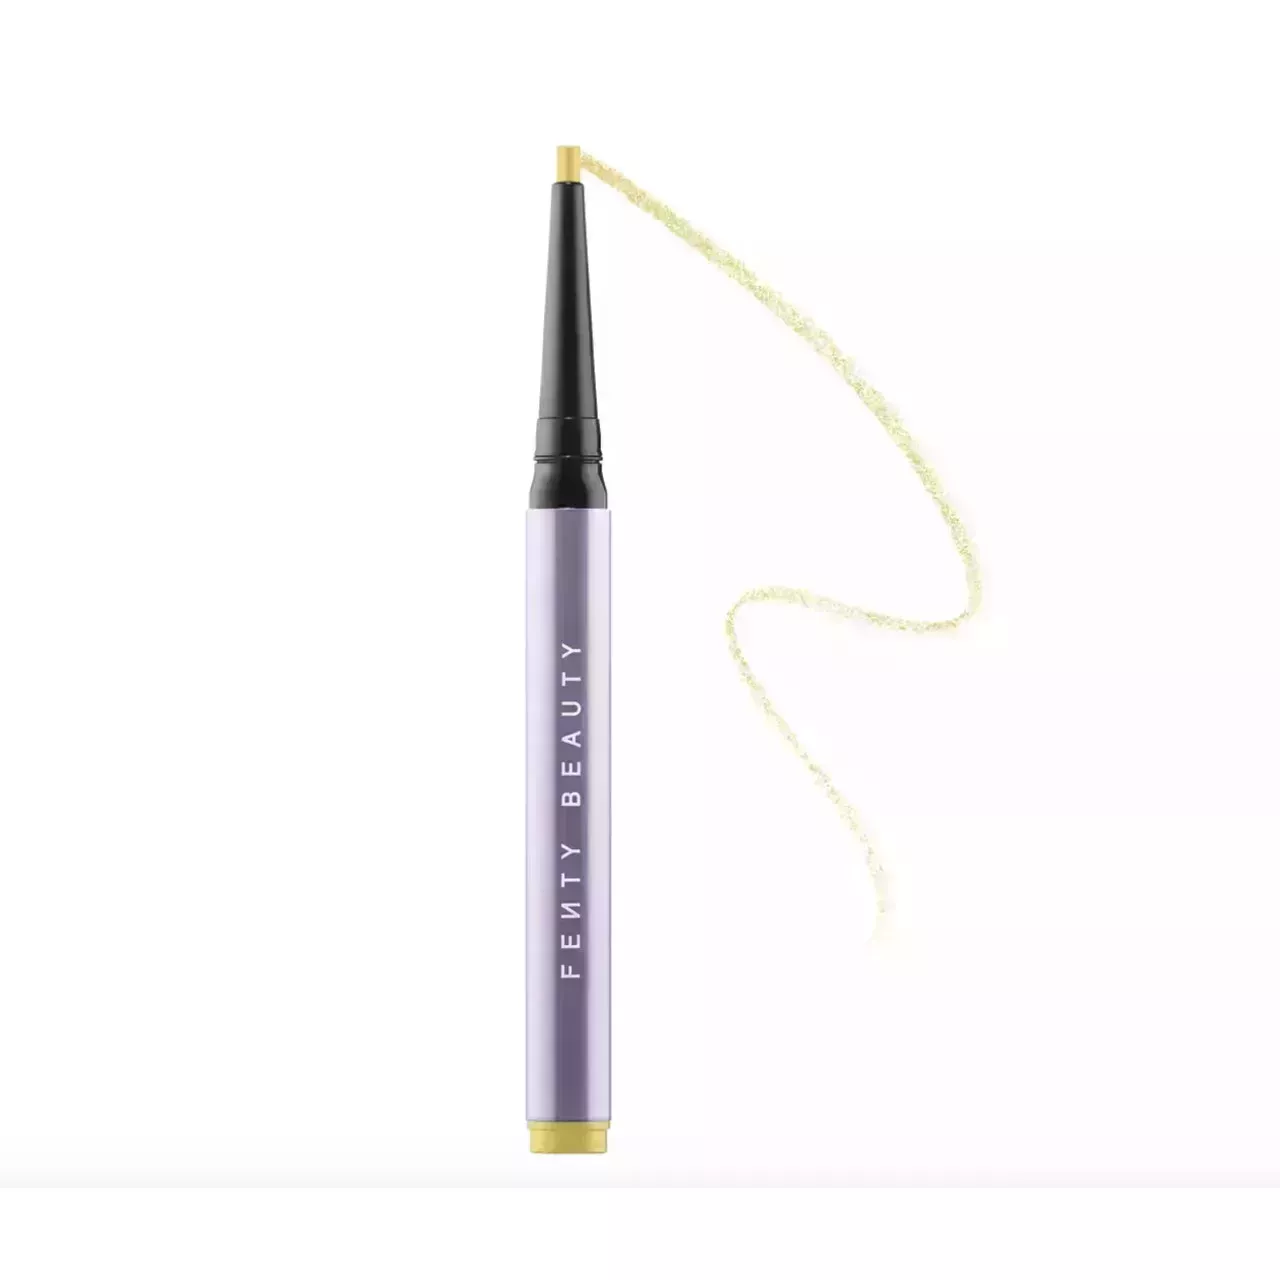 Fenty Beauty Flypencil Longwear Pencil Eyeliner on white background